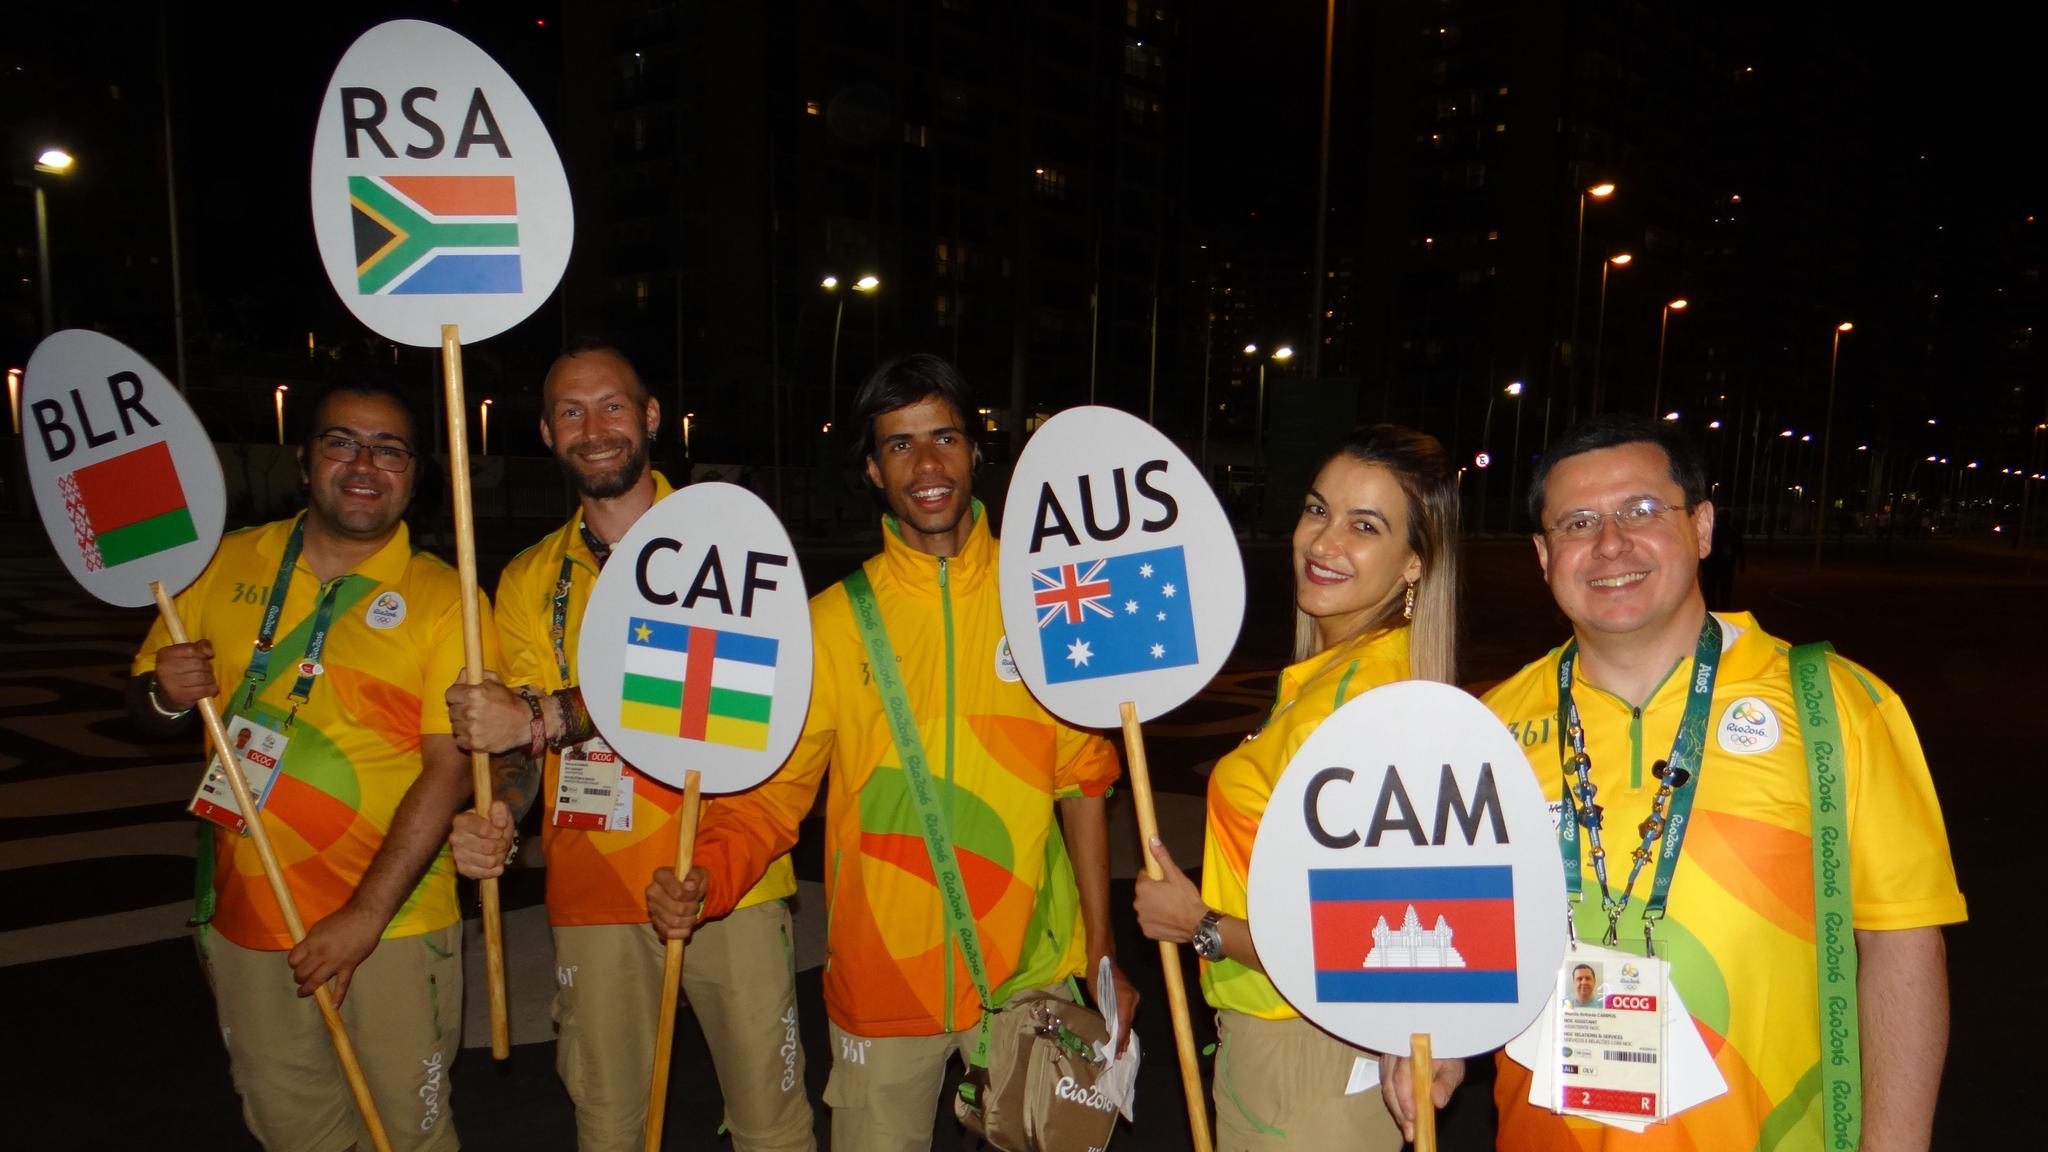 Missão cumprida: o colunista (à direita) e outros NOC assistants depois de levarmos nossas delegações aos pontos de embarque na Vila Olímpica rumo à cerimônia de abertura.